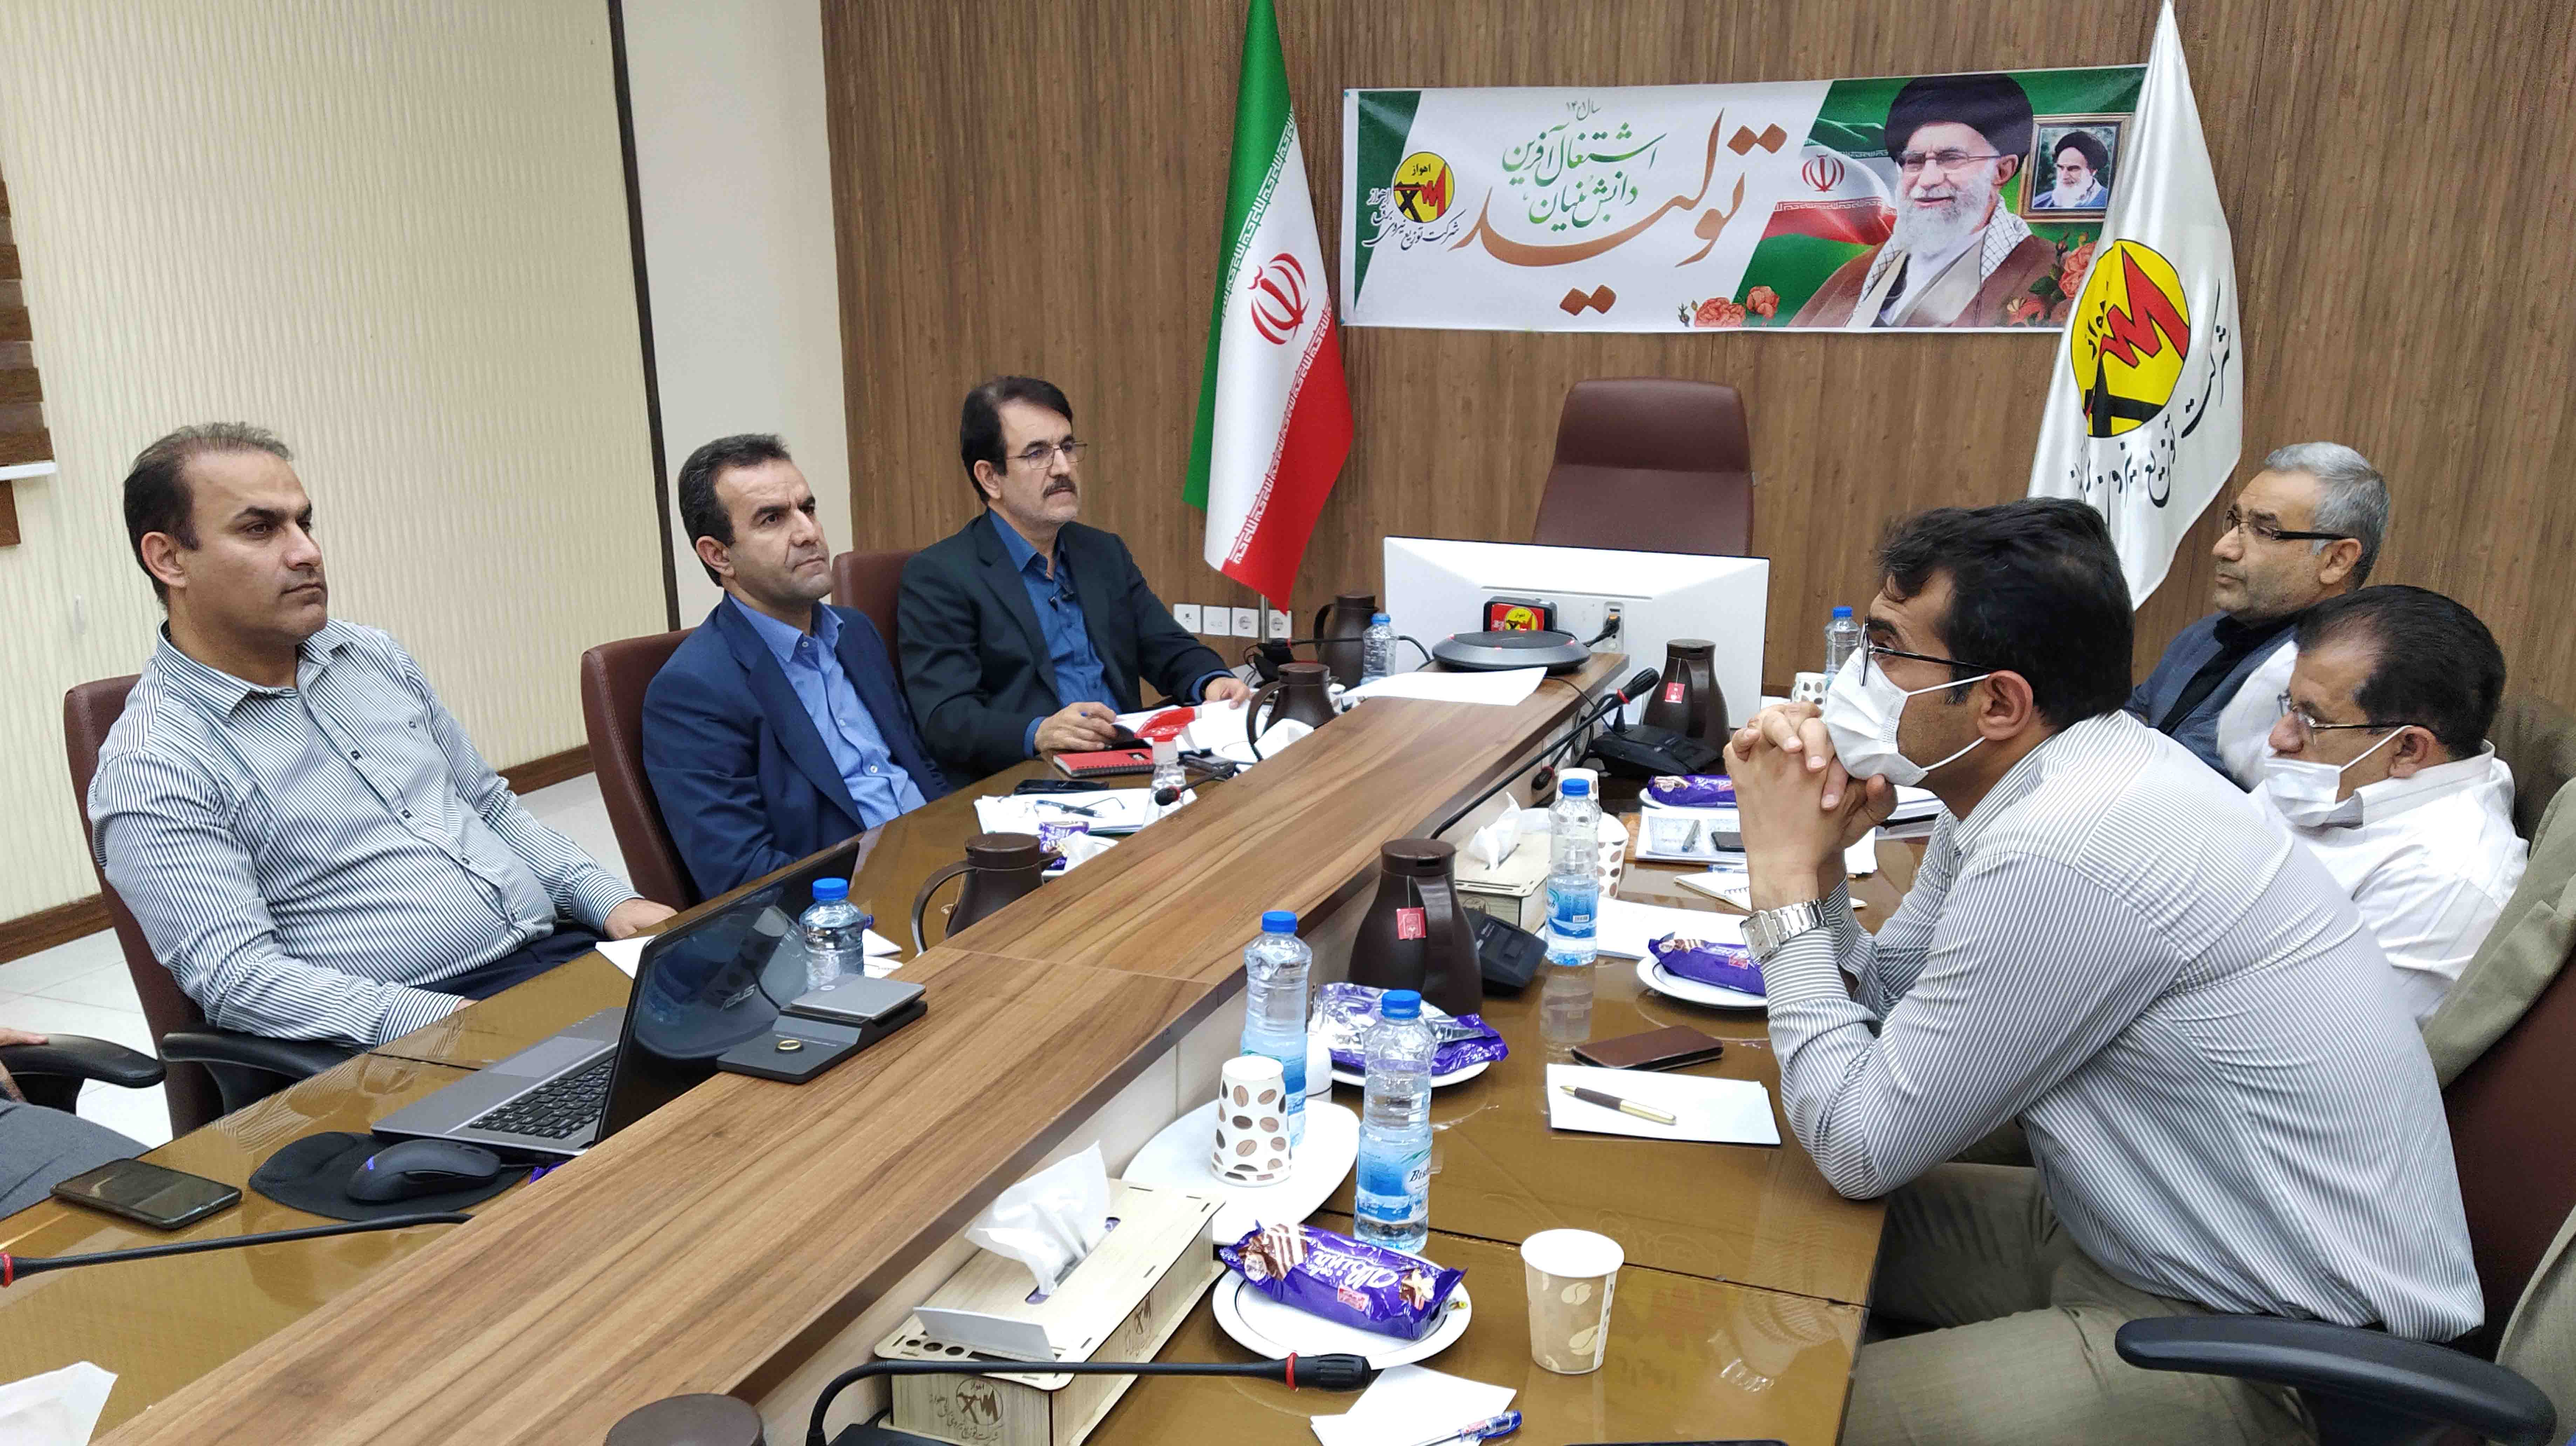 جلسه هفتگی کنترل و پایش انرژی برق خوزستان به میزبانی برق اهواز برپا شد